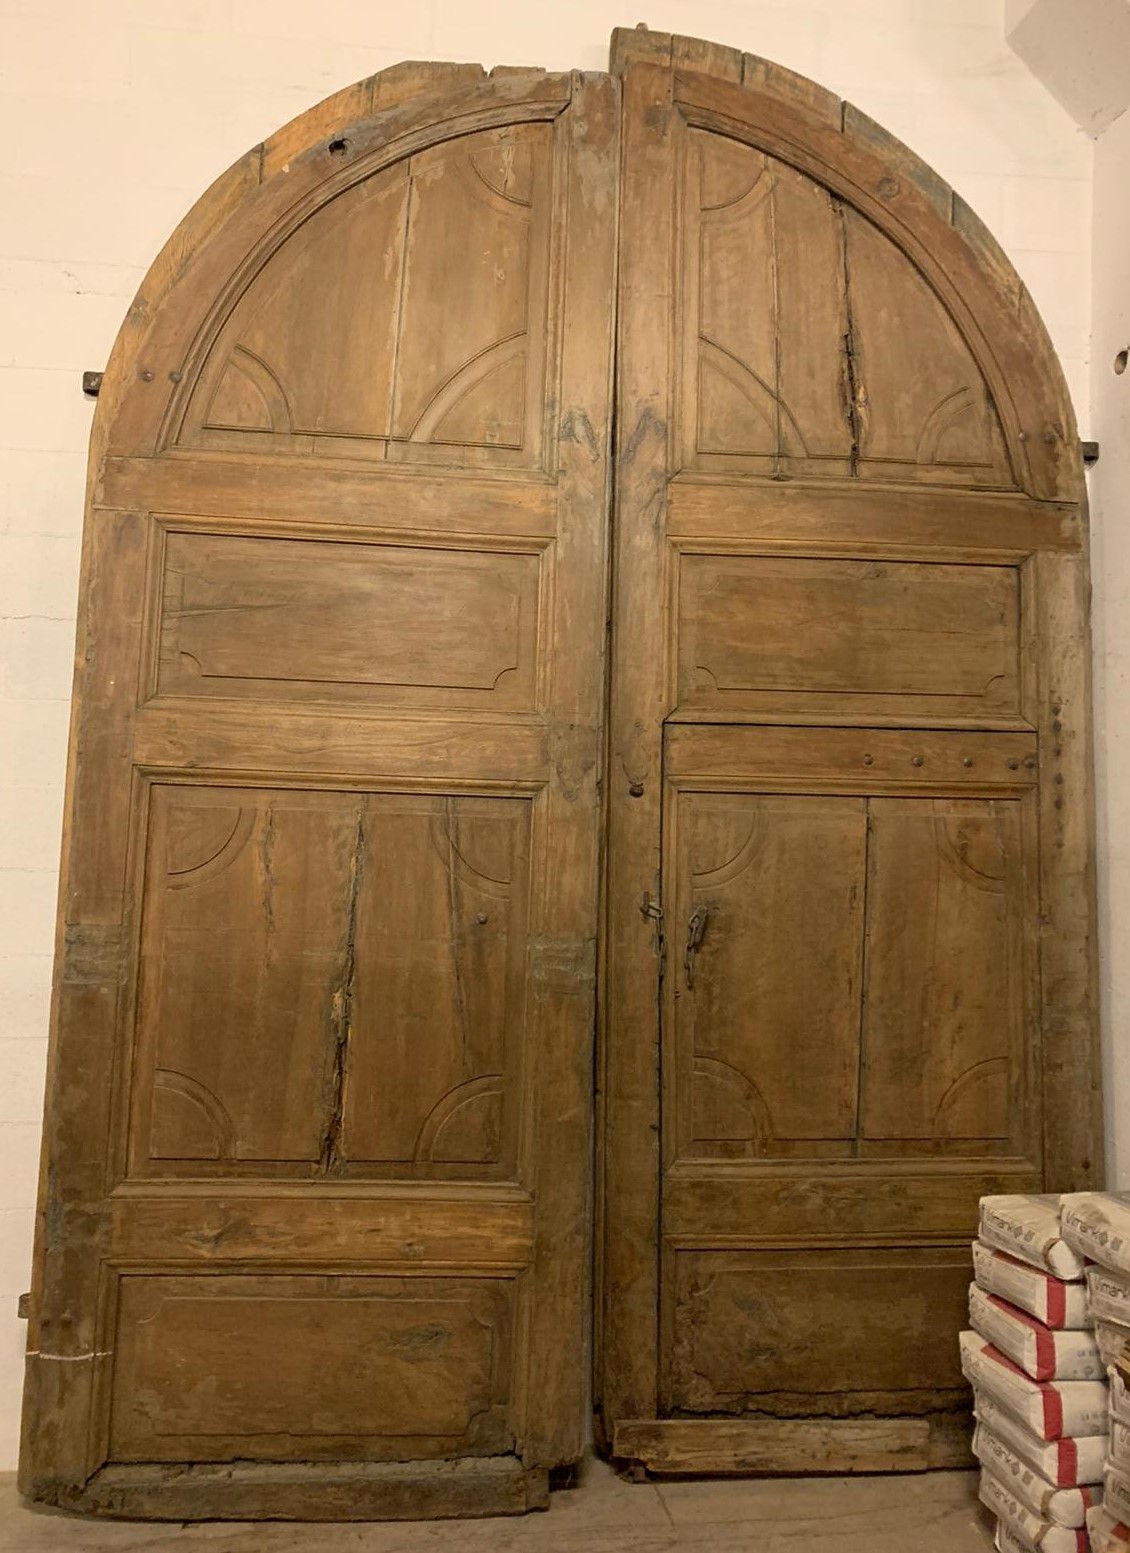 ptn255 - walnut door, '7 /' 800 period, meas. cm w 256 x h 345